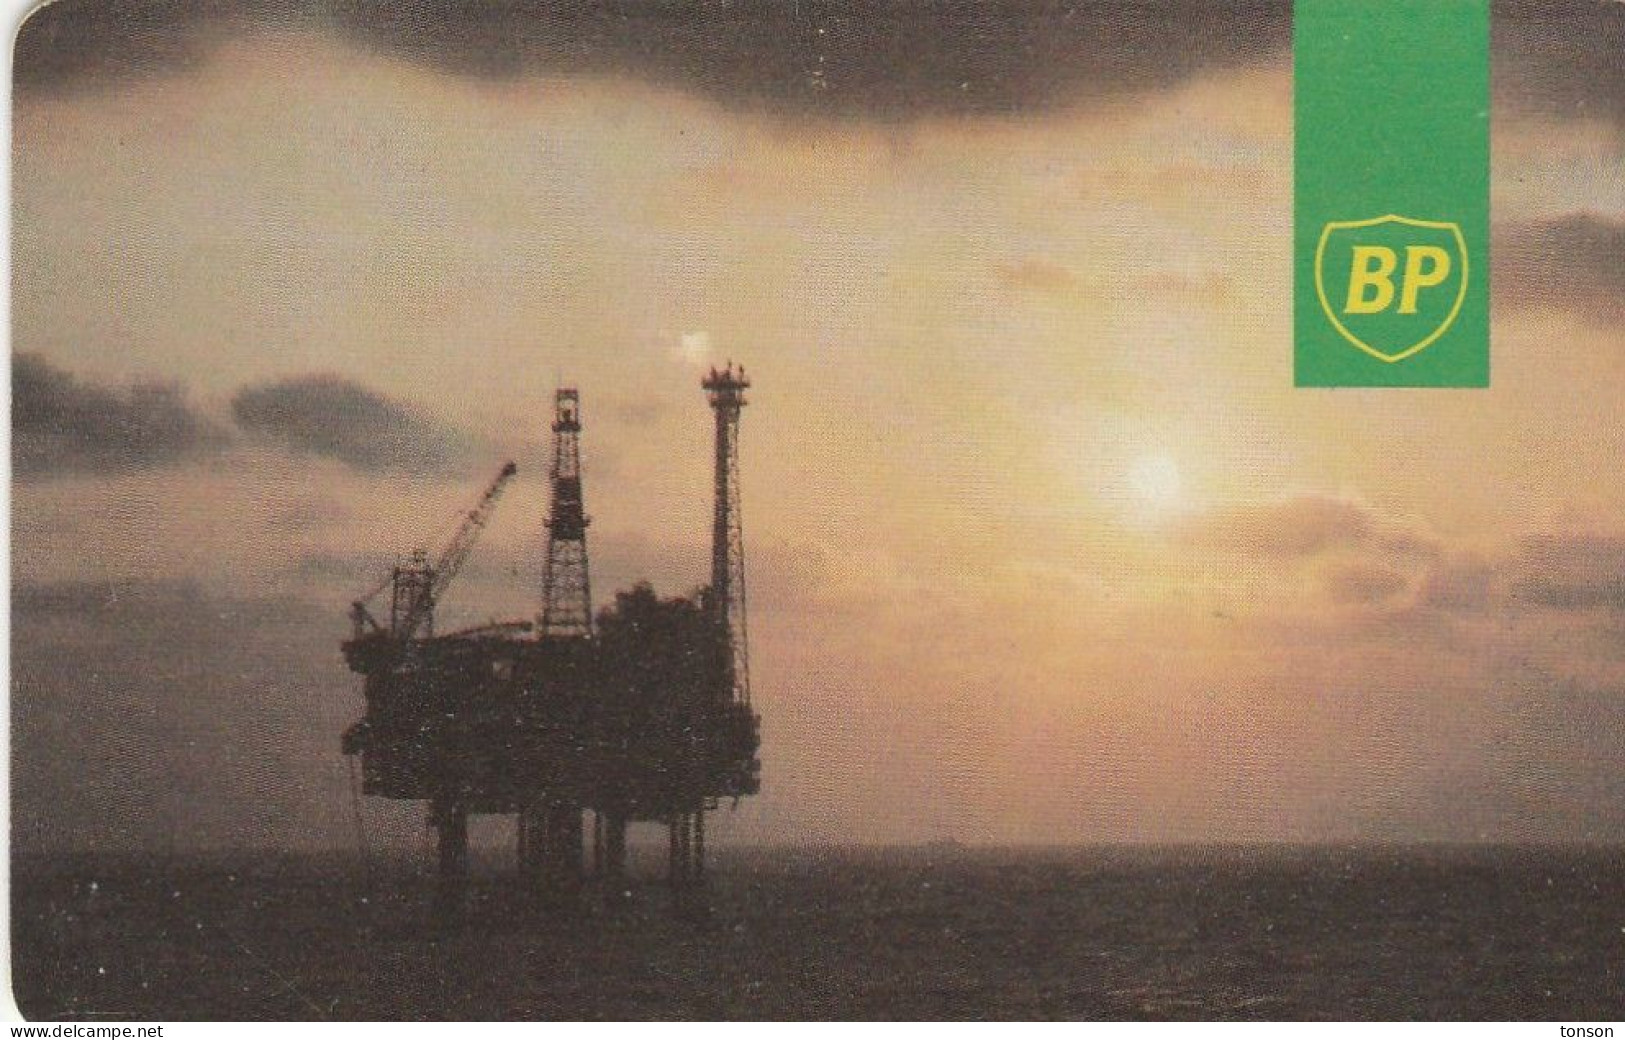 UK Oil Rig Phonecard - BP, GB-OIL-AUT-0001, BP (Blue IPL Logo), 20 Units, 2 Scans. - Plateformes Pétrolières